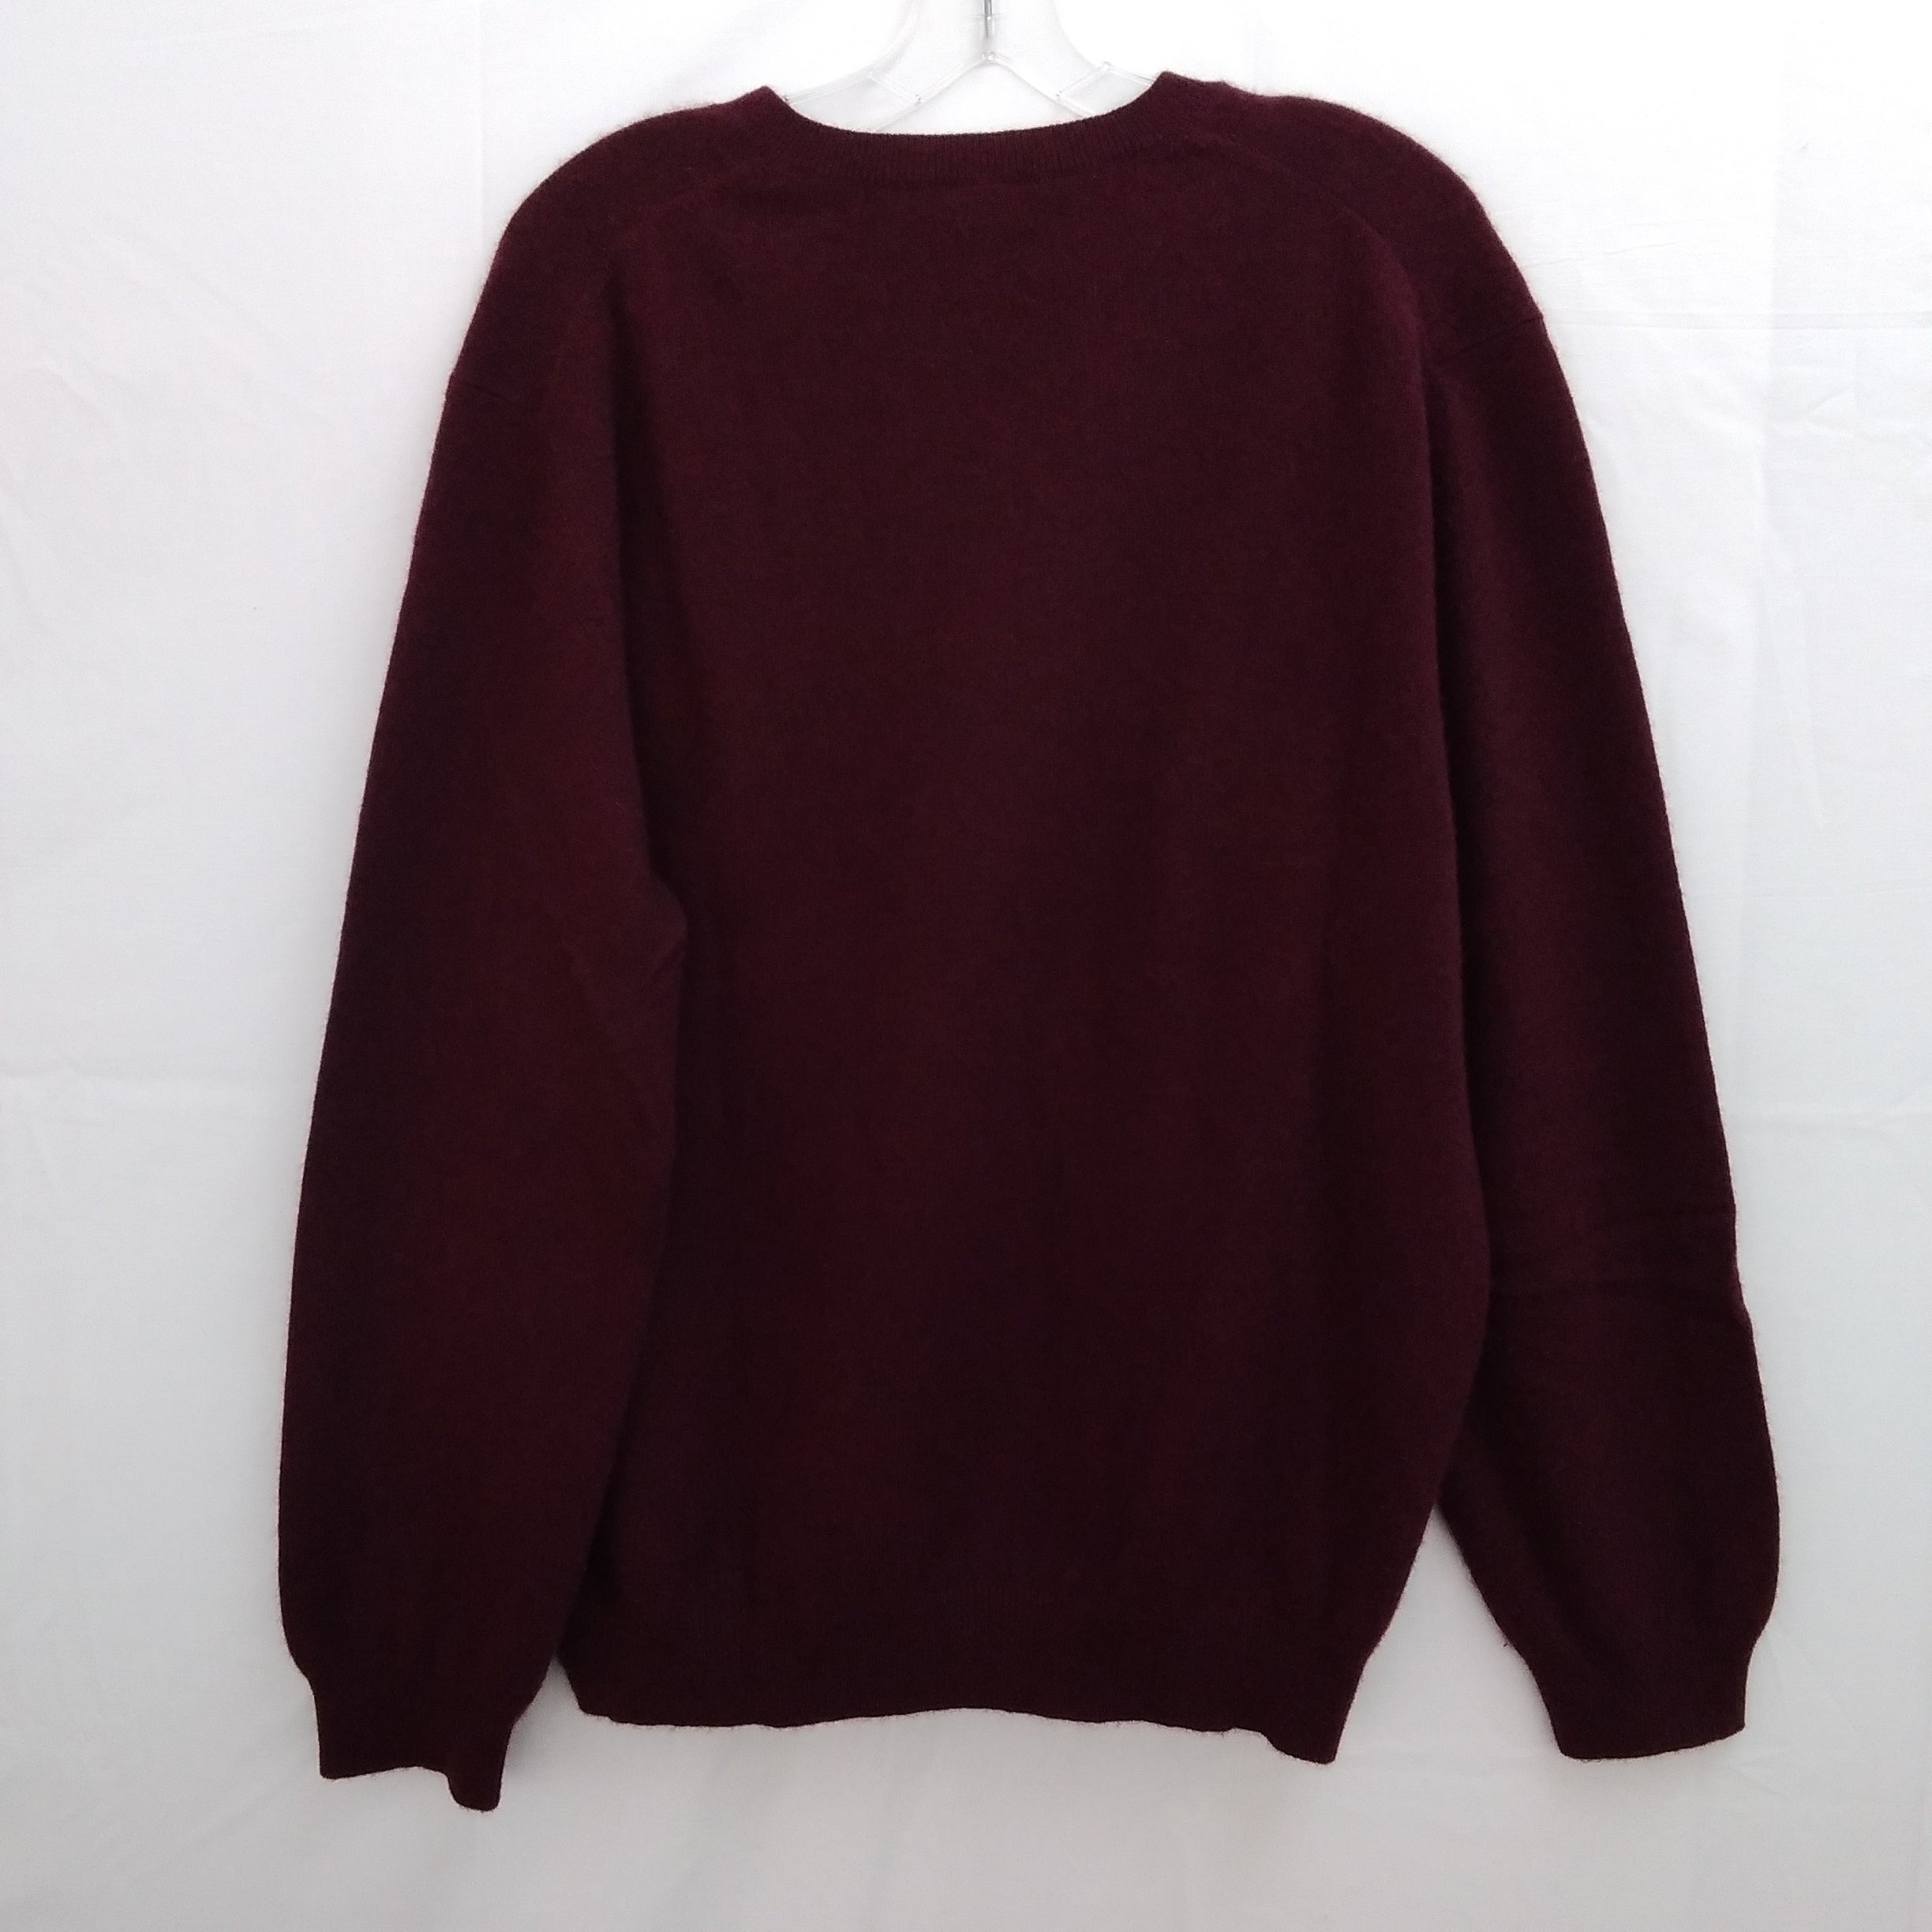 Vintage 90s Lands' End burgundy Cashmere V-Neck Sweater - L (42-44)